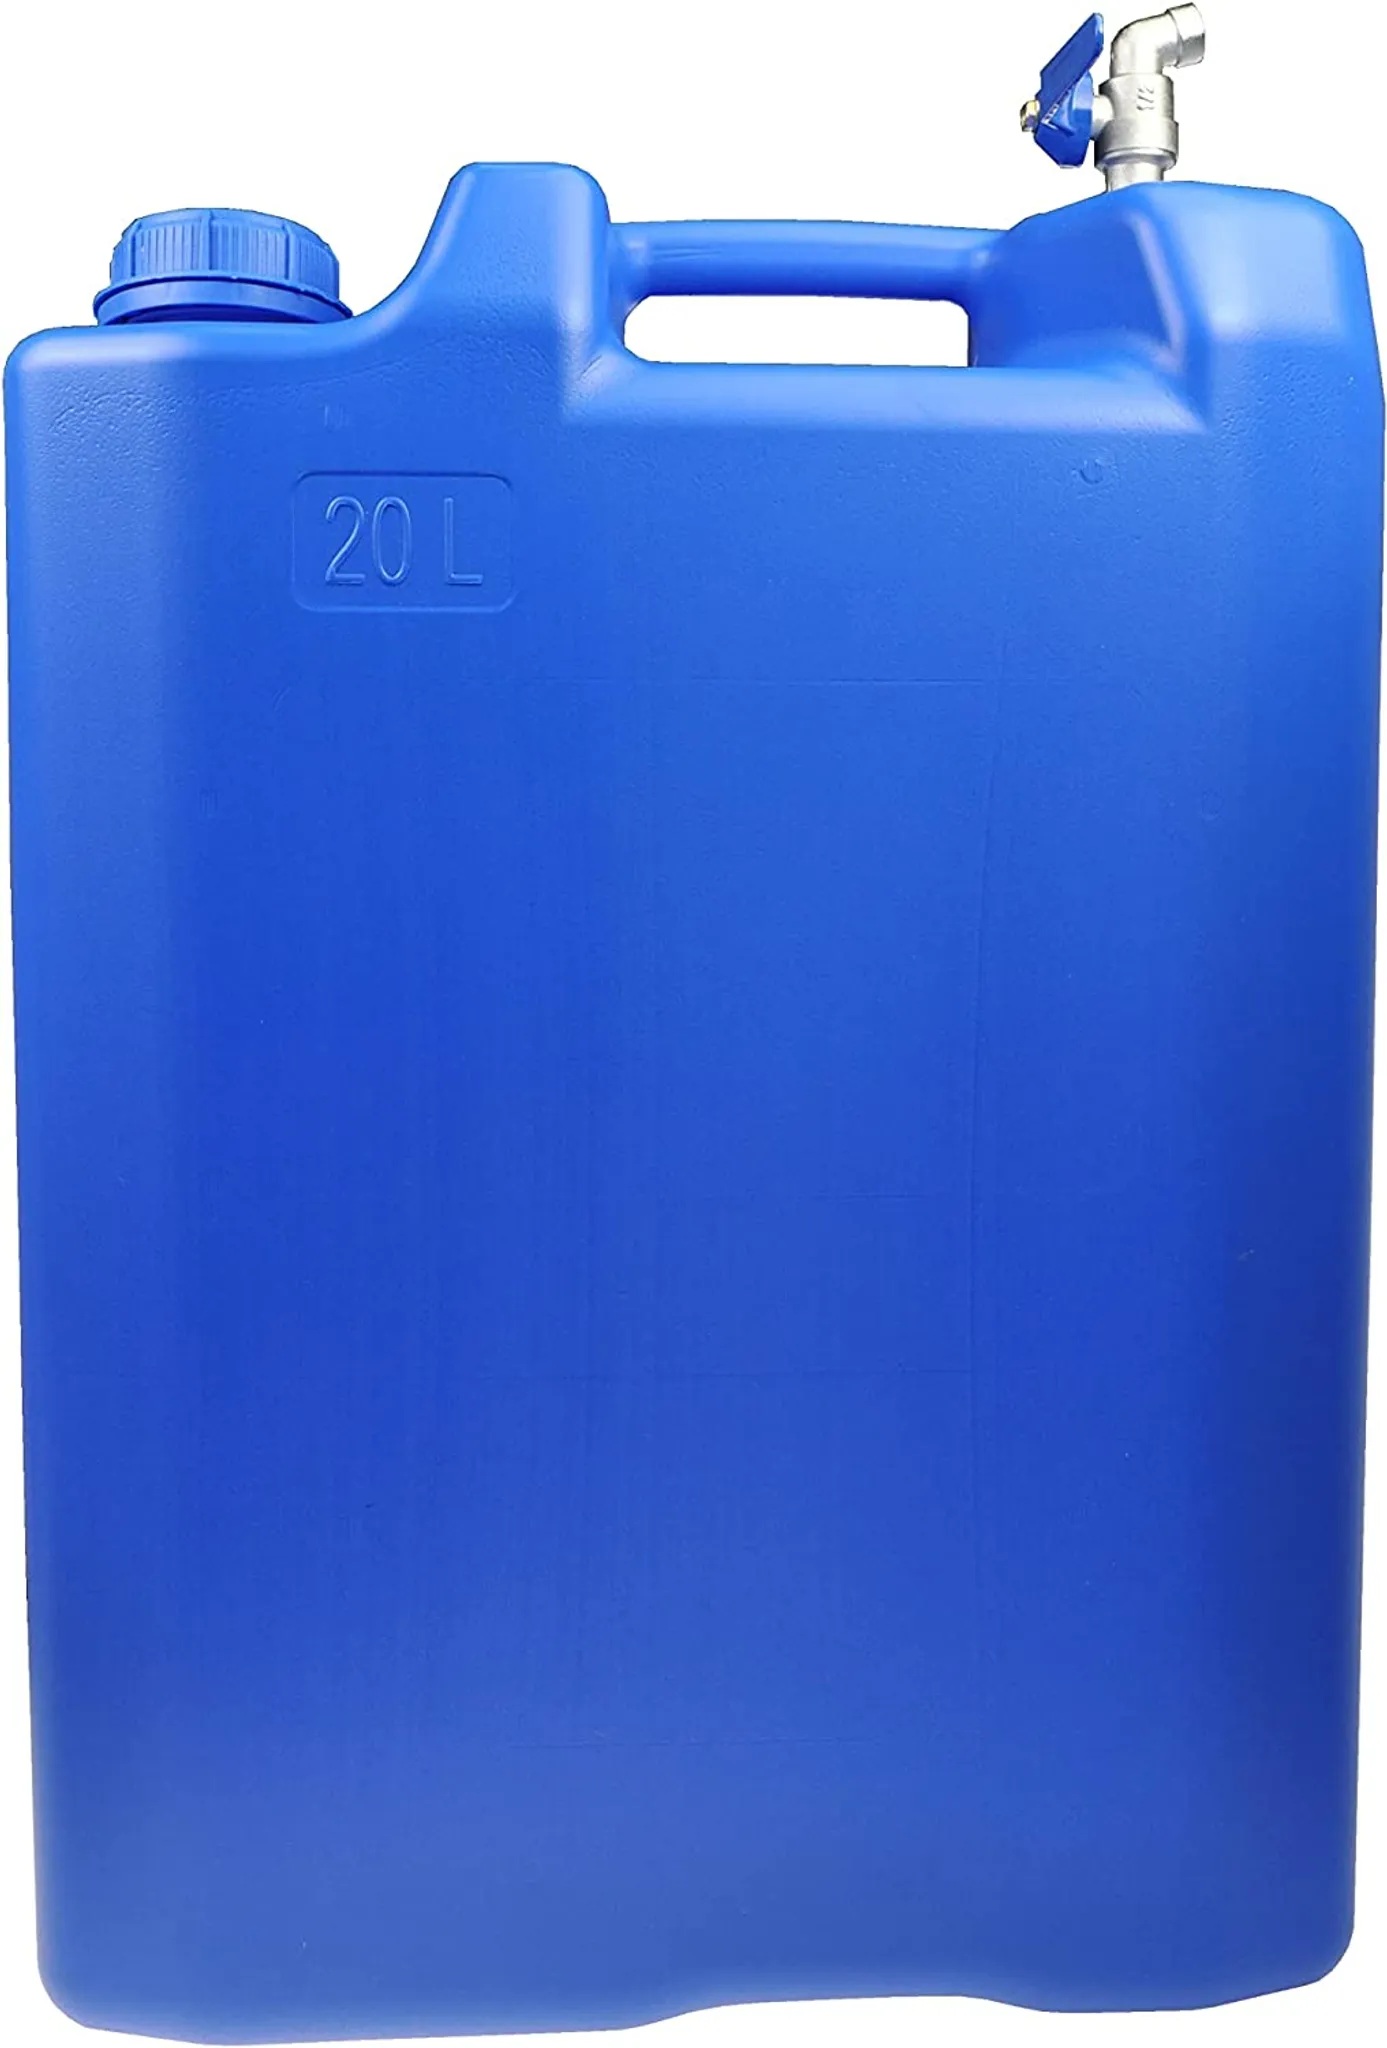 20 L BLAU Wasserbehälter Schmal Wasserkanister Tankbehälter Camping  Kanister + verzinkt Hahn